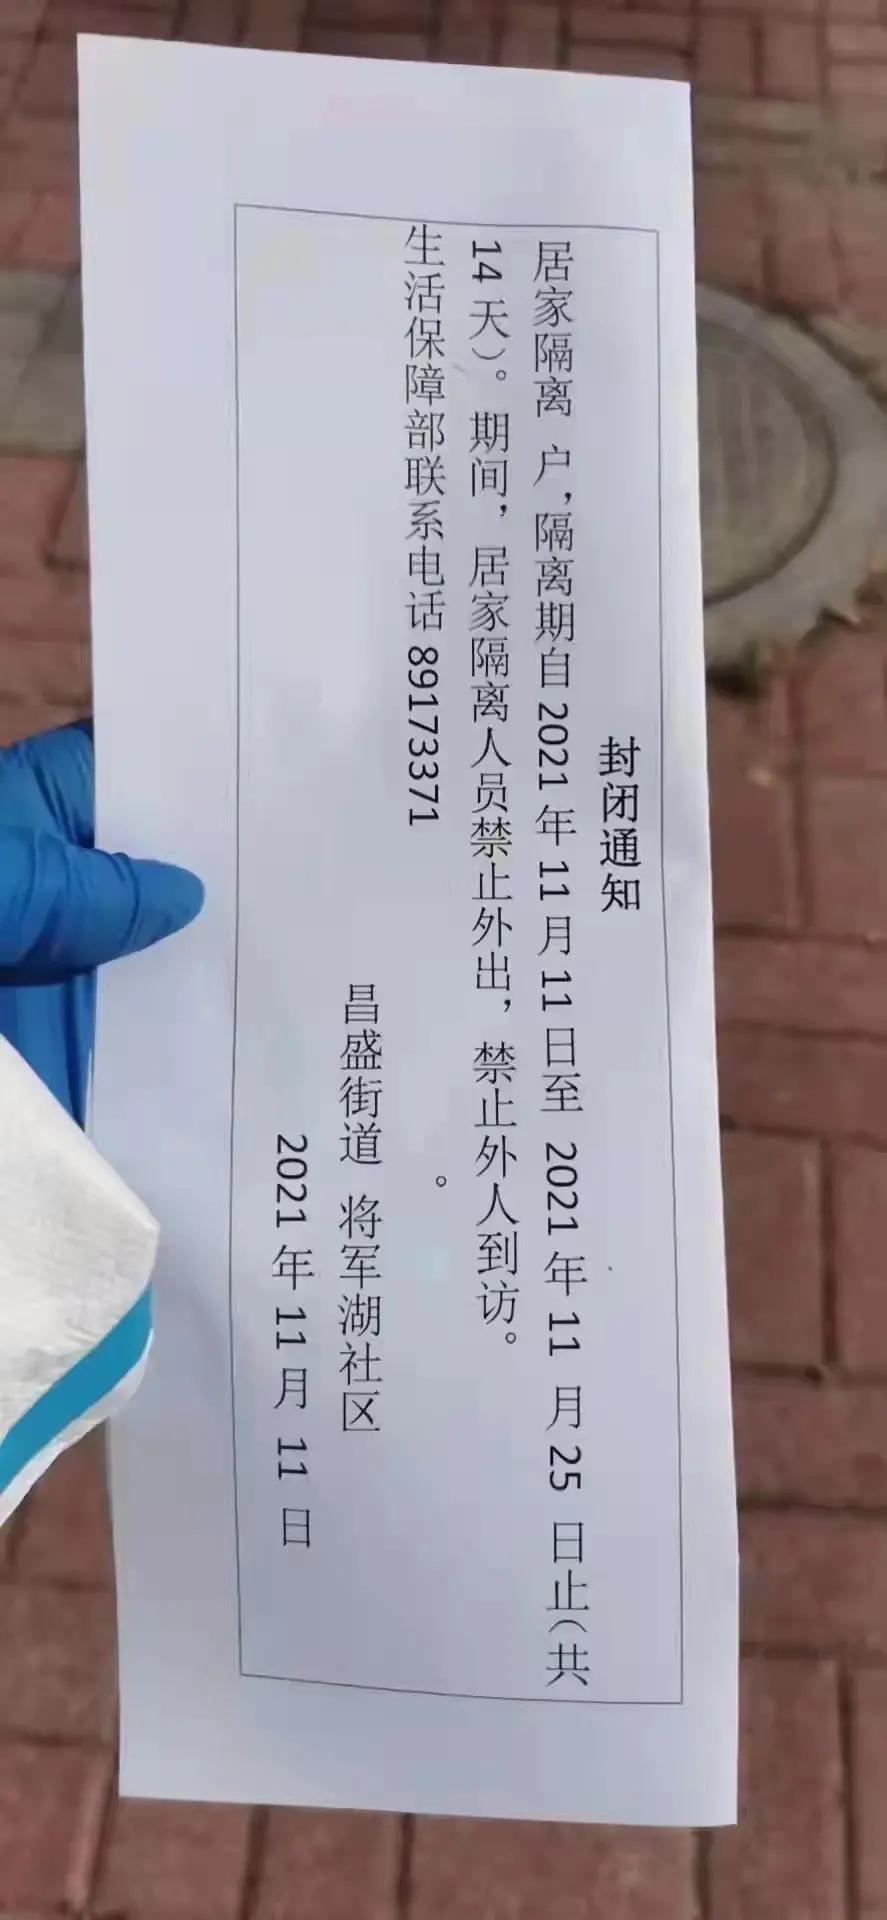 根据网传的“封闭通知”，庄河市居家隔离人员本月25日前都禁止外出。（取自微信）